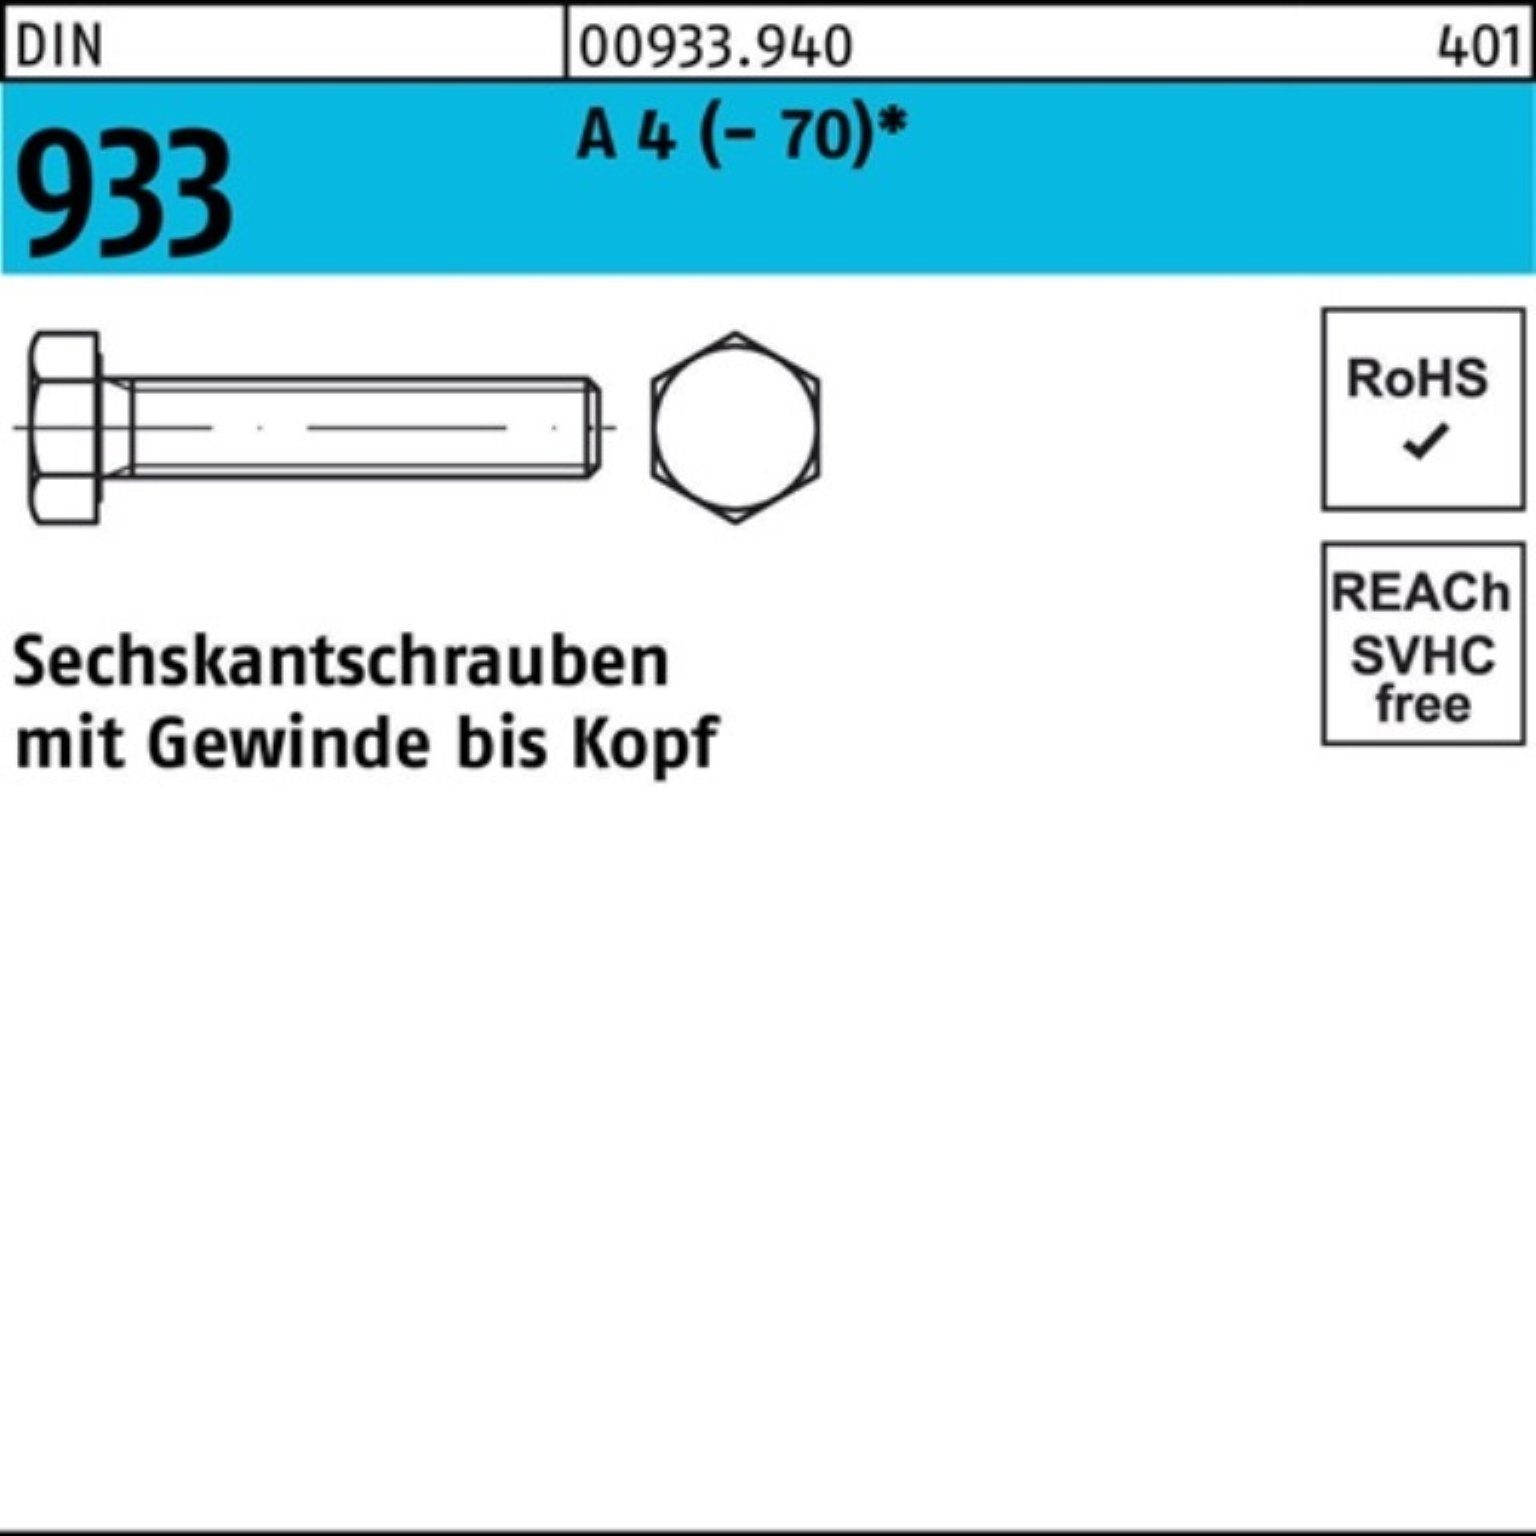 Reyher Sechskantschraube 100er Pack DIN A 200 4 (70) Stück Sechskantschraube 1 VG M10x 933 D